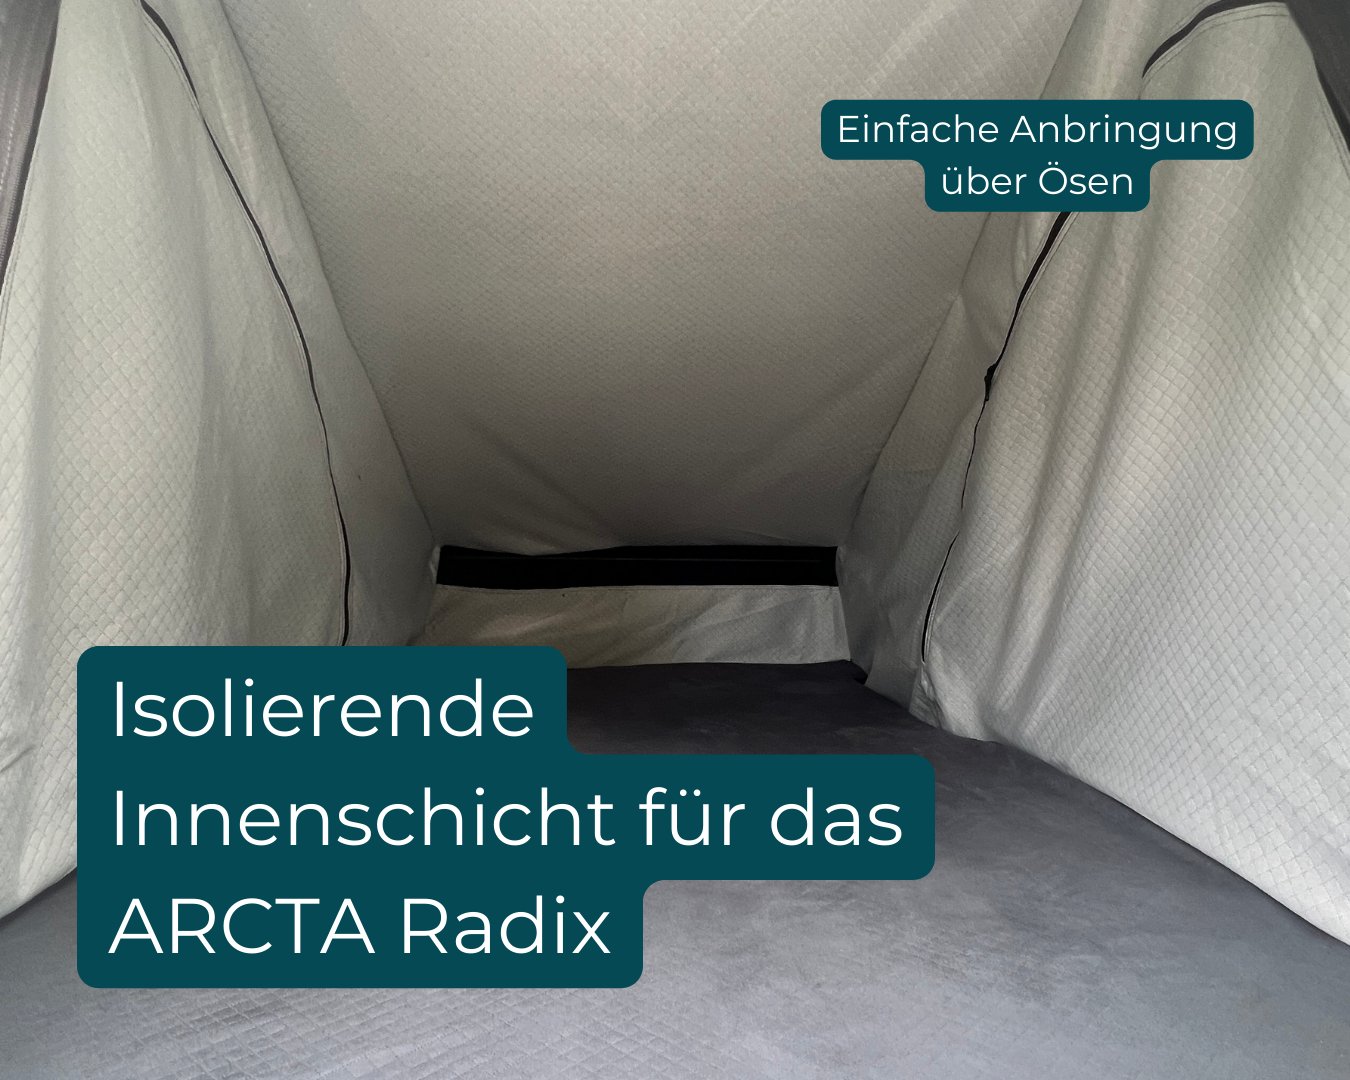 Thermo Innenzelt | Radix 2.0 - ARCTA Isolierende Innenschicht für das ARCTA Radix